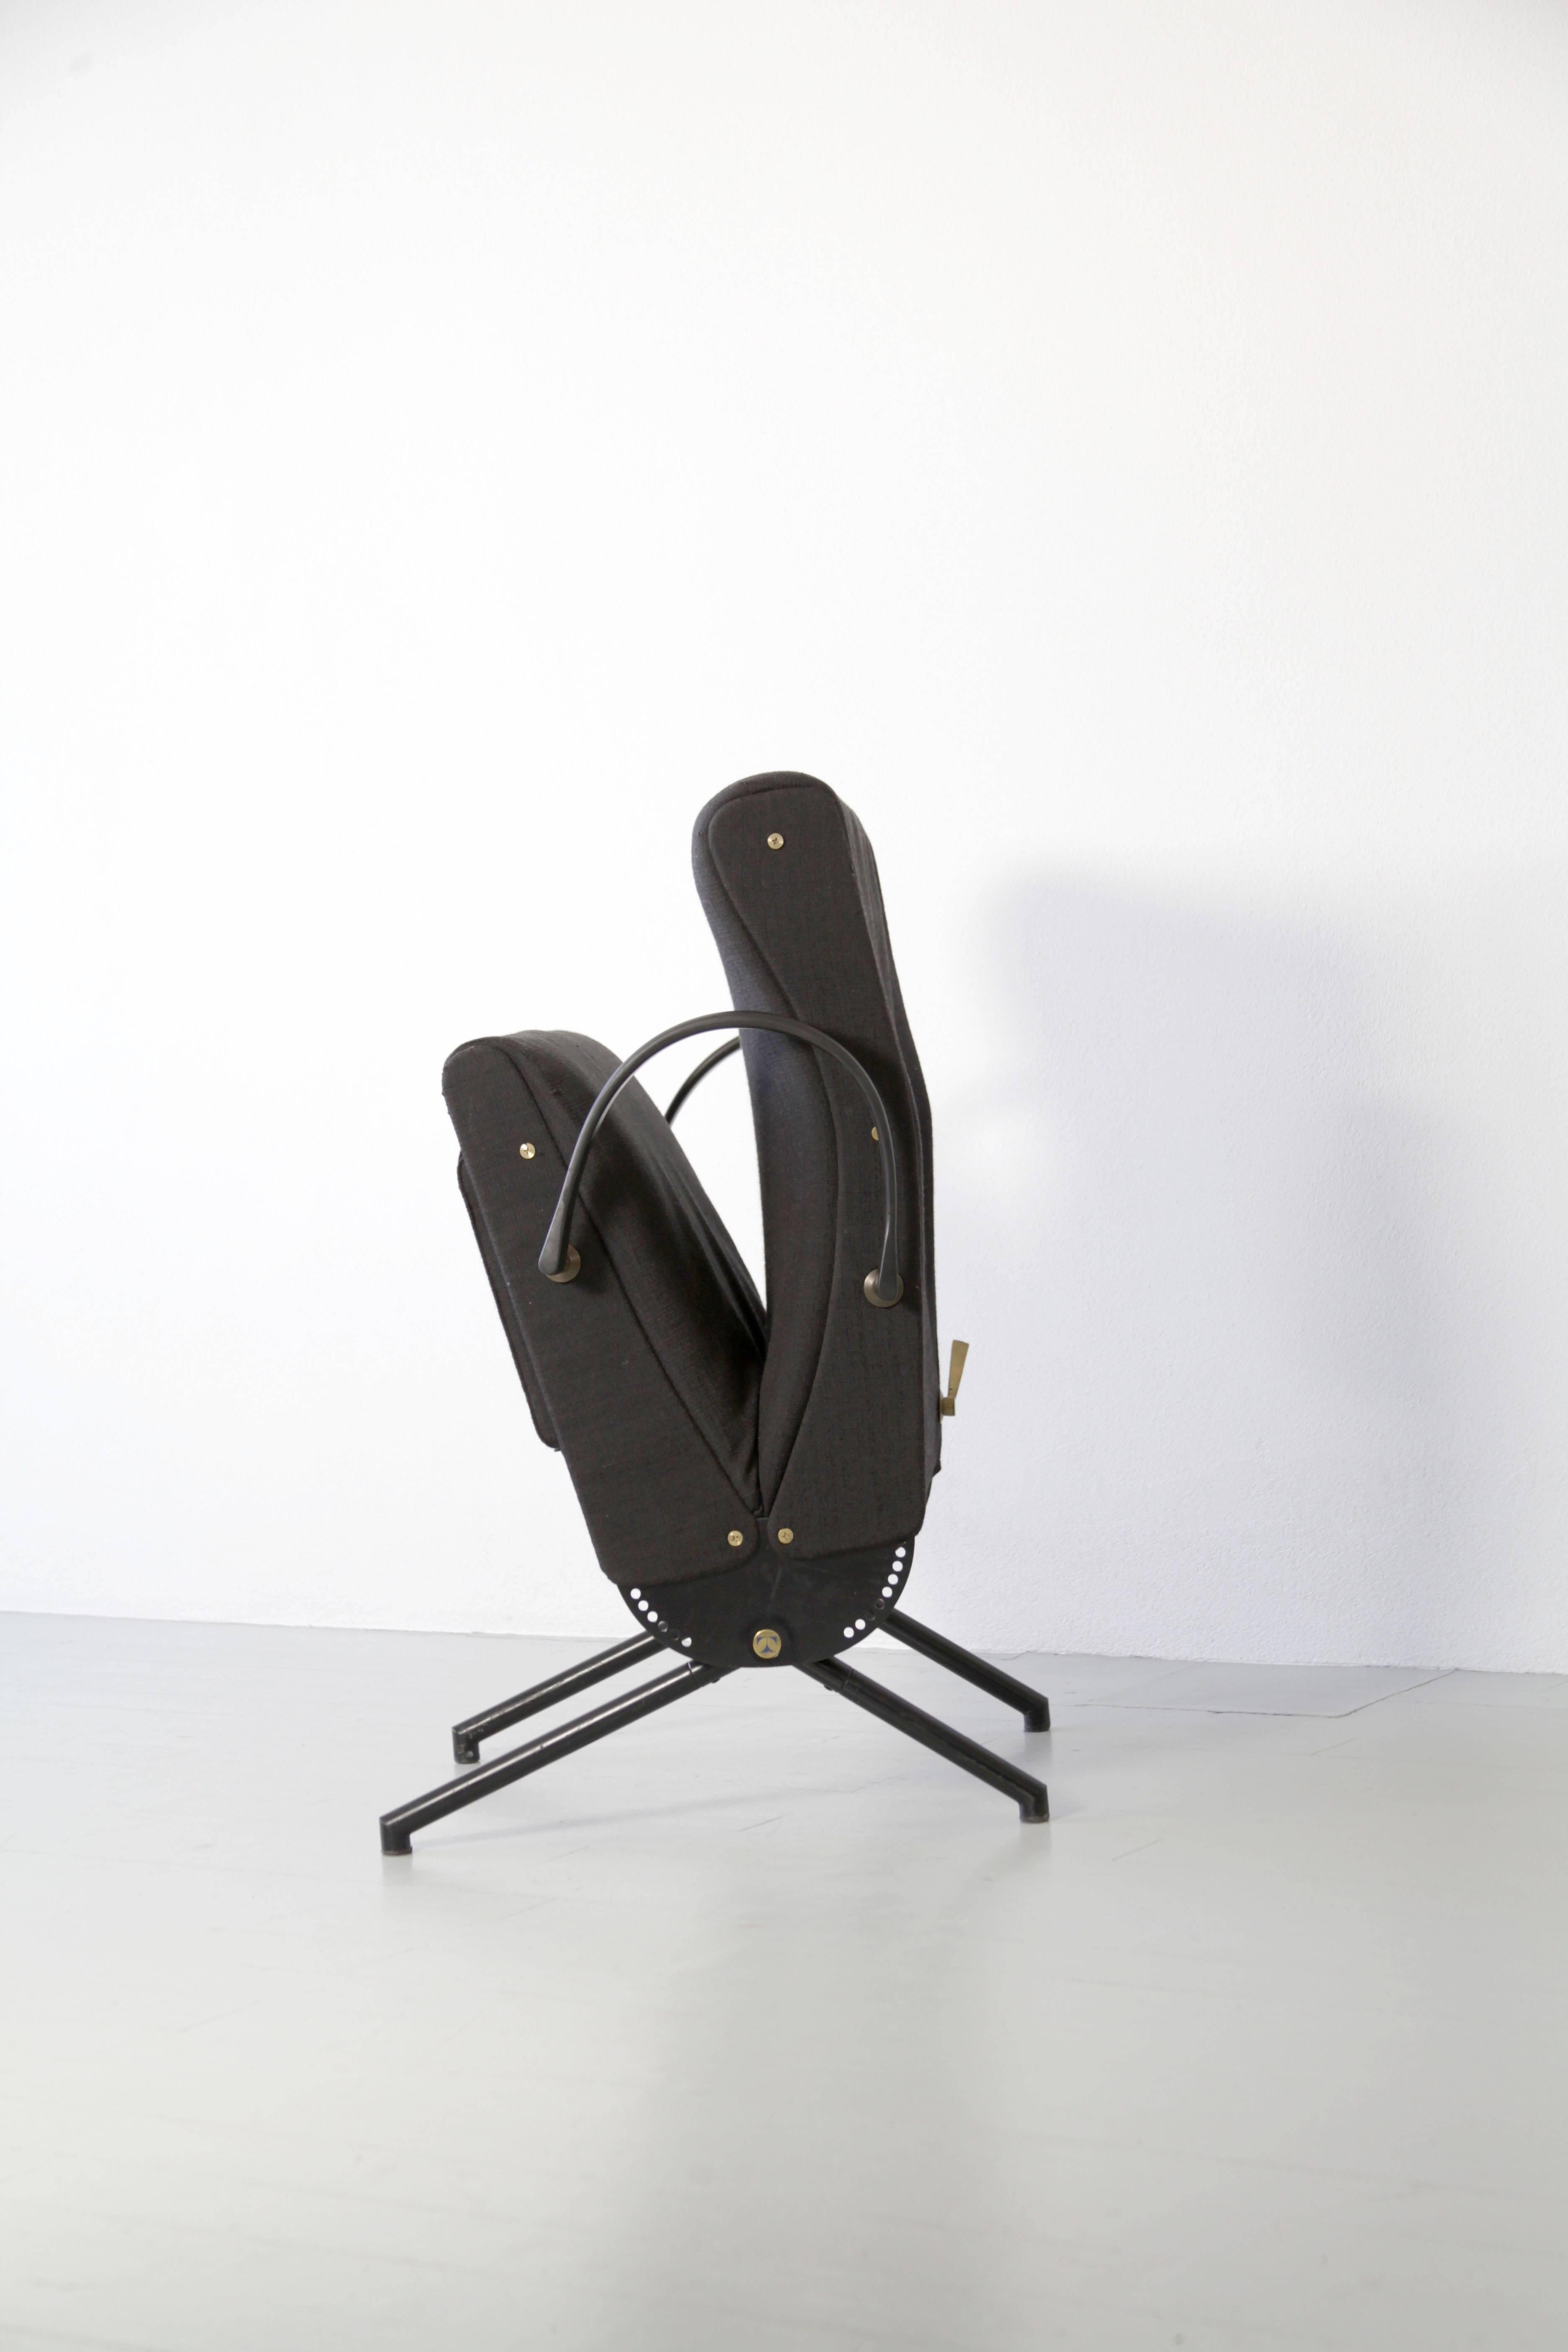 1. Auflage des Sessels P40, entworfen von Osvaldo Borsani in den 1950er Jahren und hergestellt von Tecno in Italien. Der Stuhl kann in verschiedene Positionen gebracht werden. Der Sitz, die Rückenlehne und die Fußstütze sind getrennt voneinander